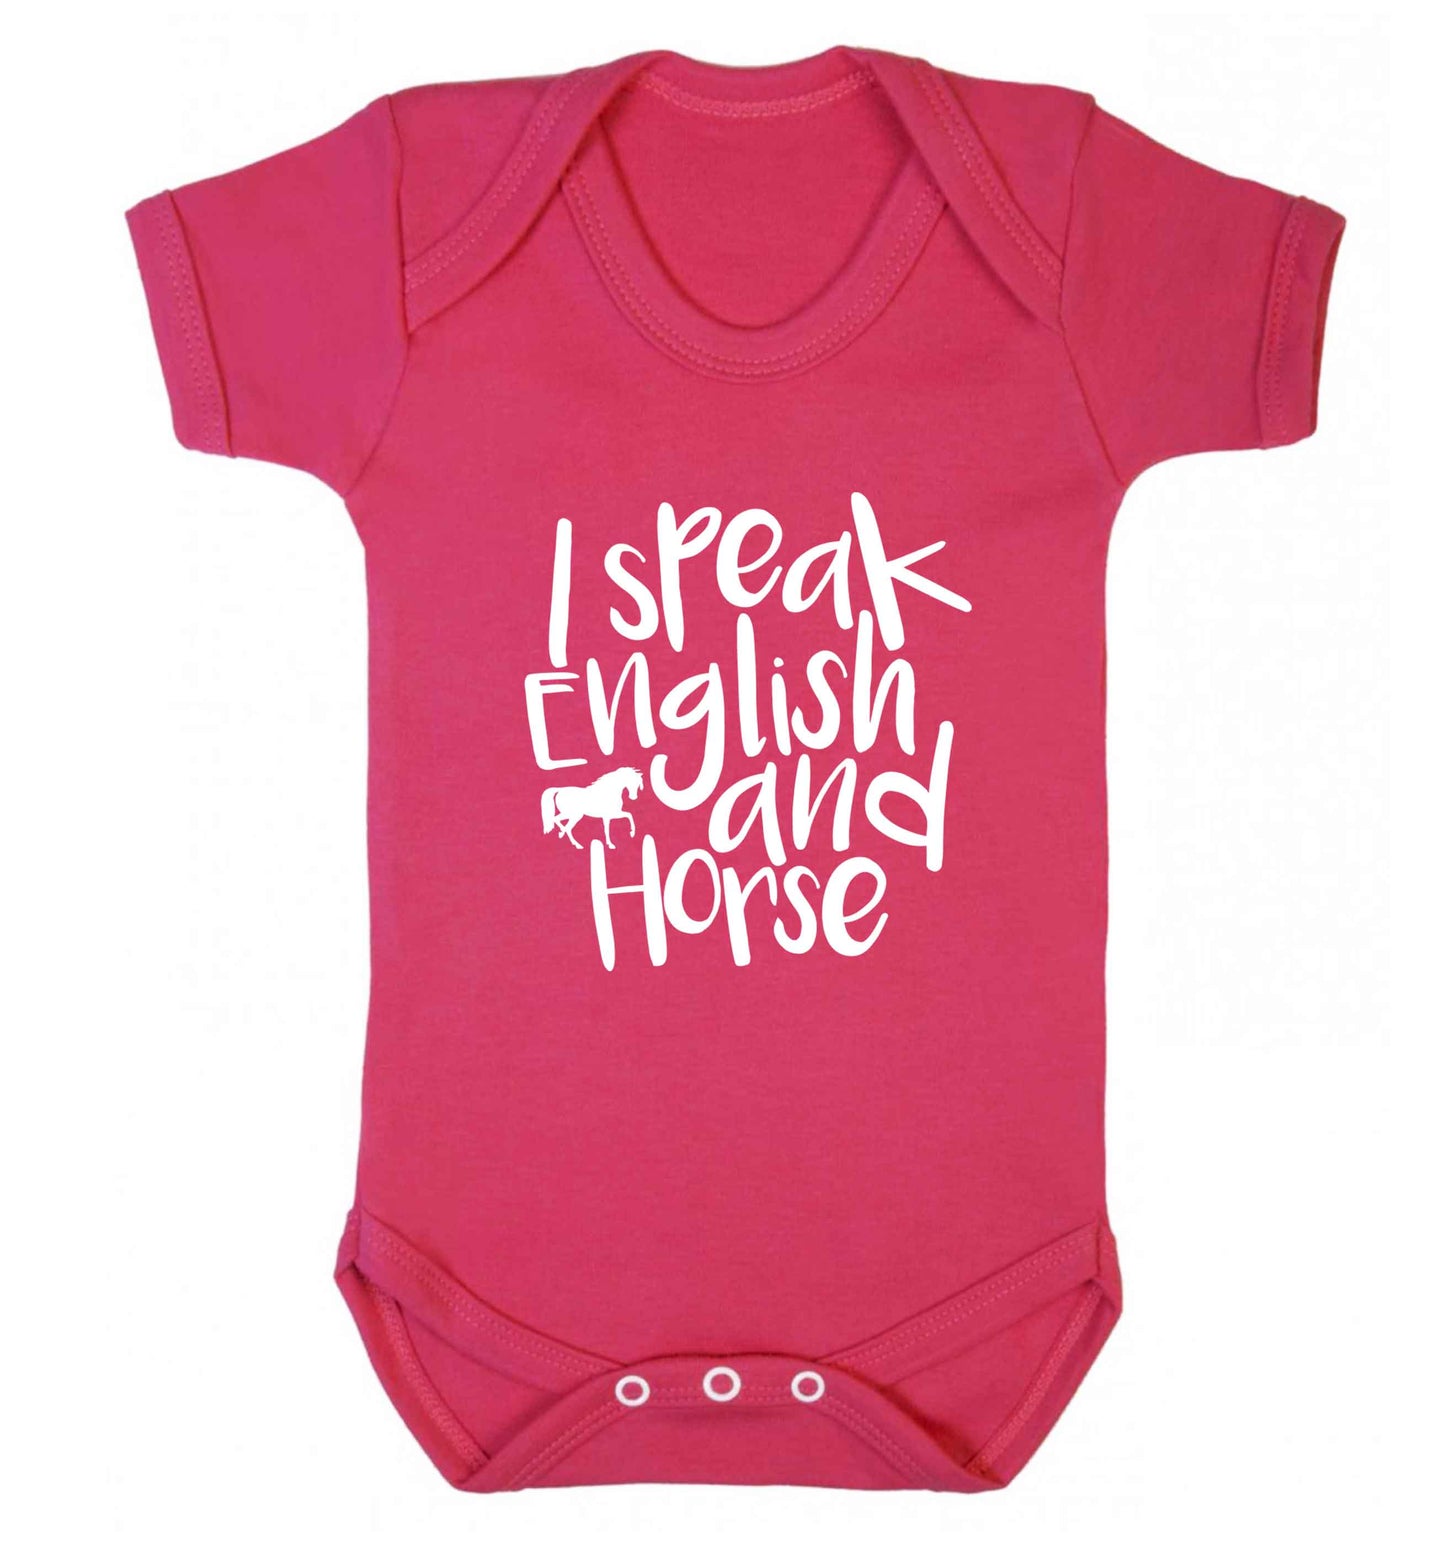 I speak English and horse baby vest dark pink 18-24 months